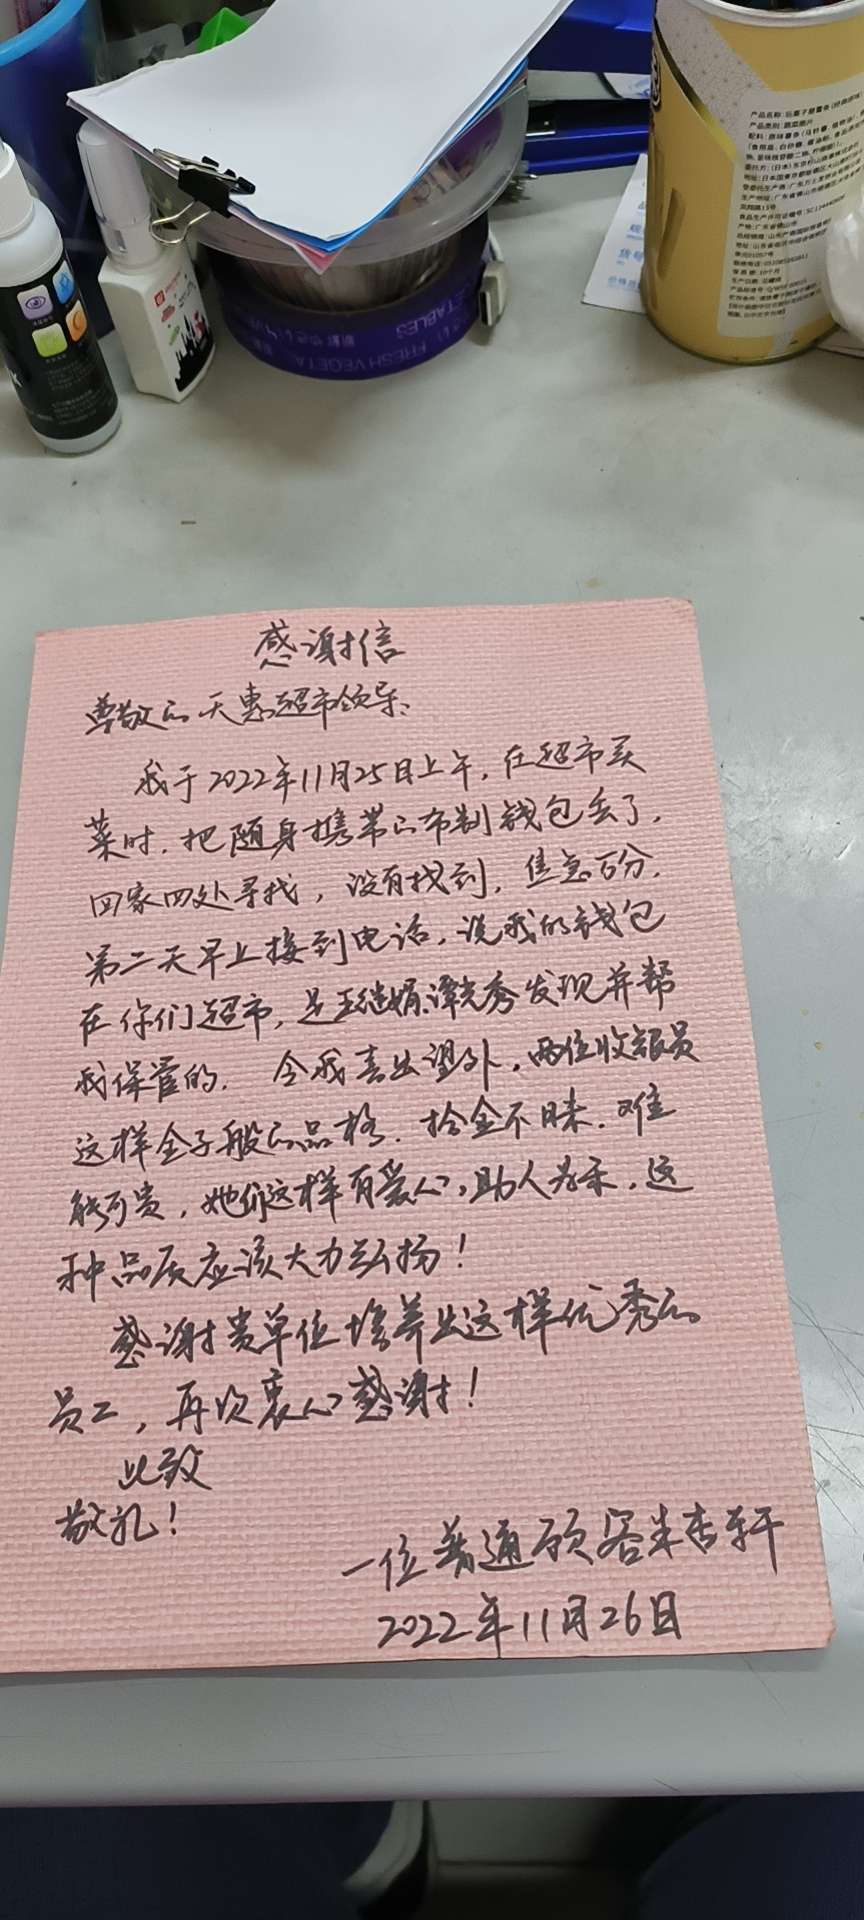 天惠超市景丽店收到感谢信